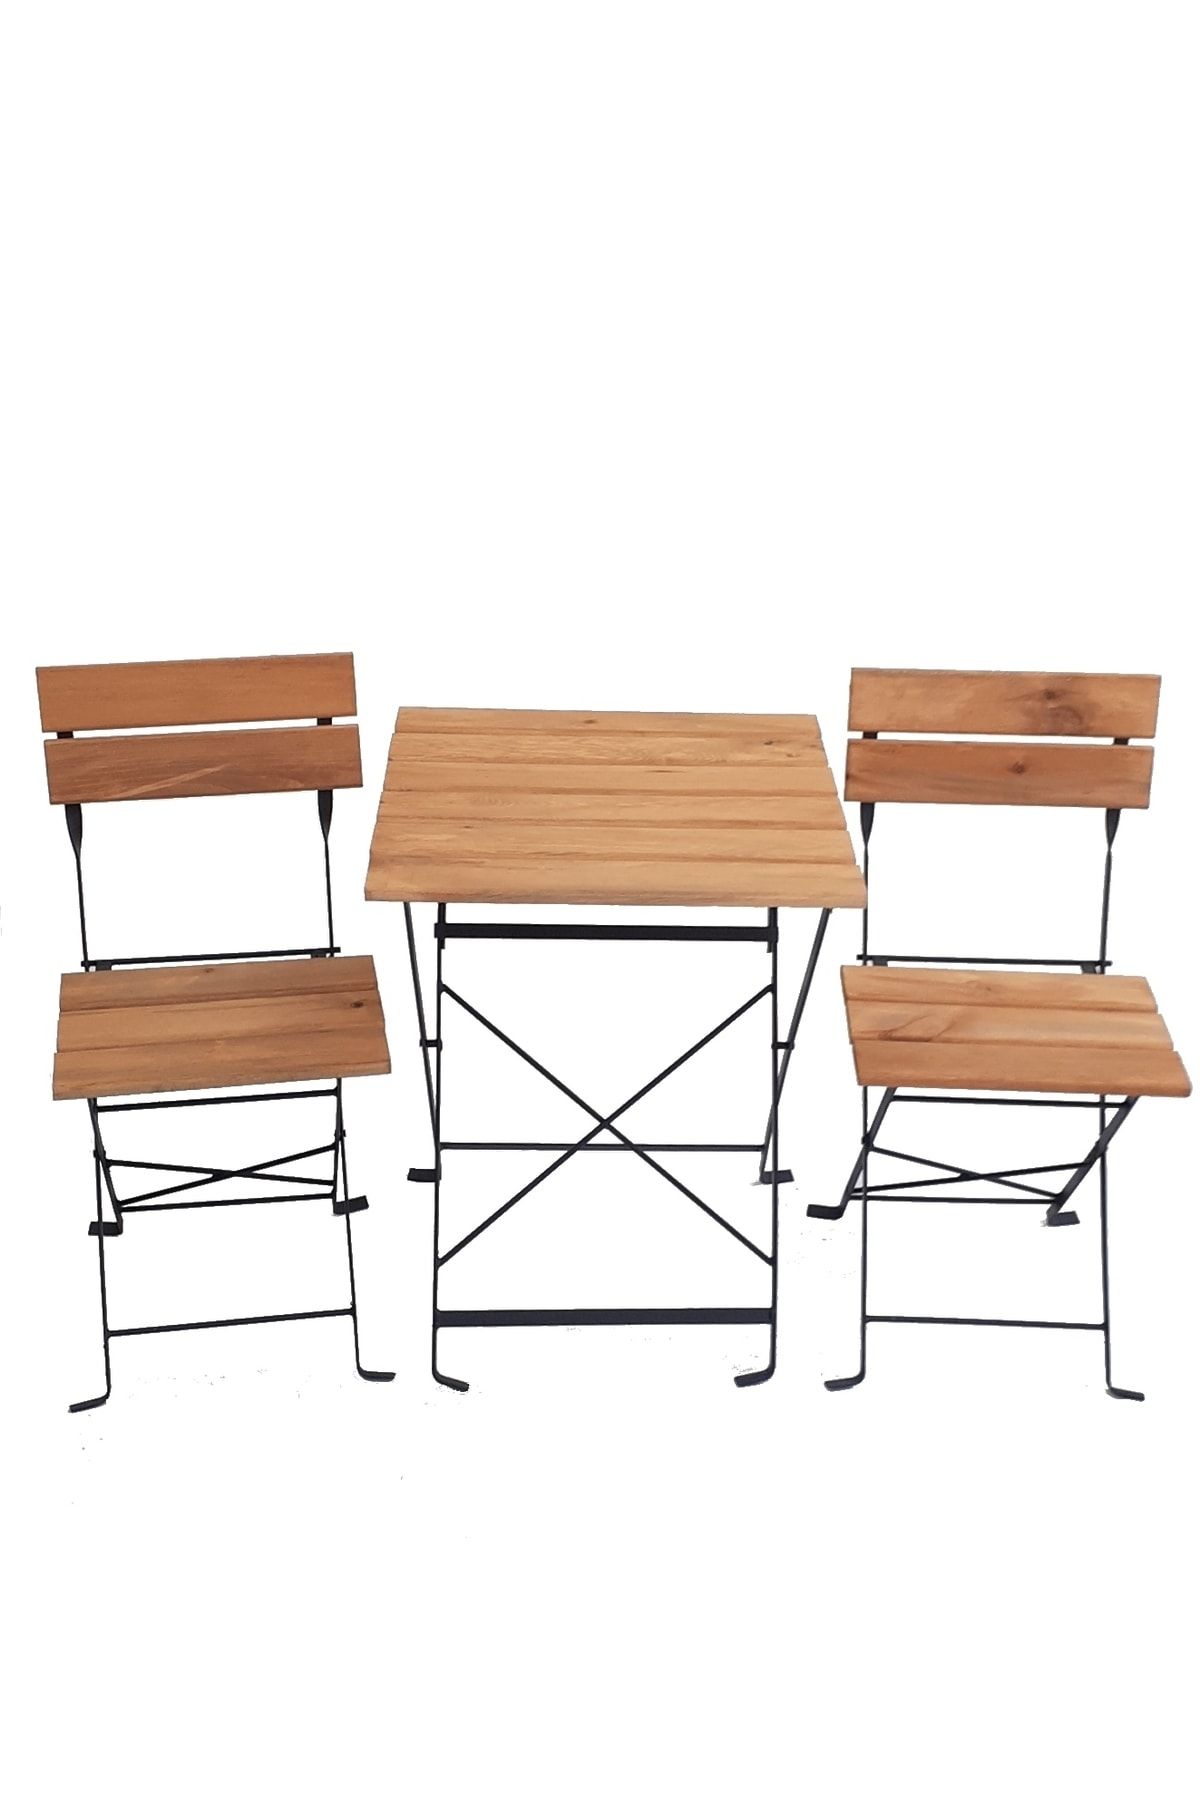 Zemes Design Ahşap Katlanır Masa Sandalye Bahçe Balkon Mutfak Takımı 2 Sandalye 1 Masa Ikea Tipi Bistro Takım